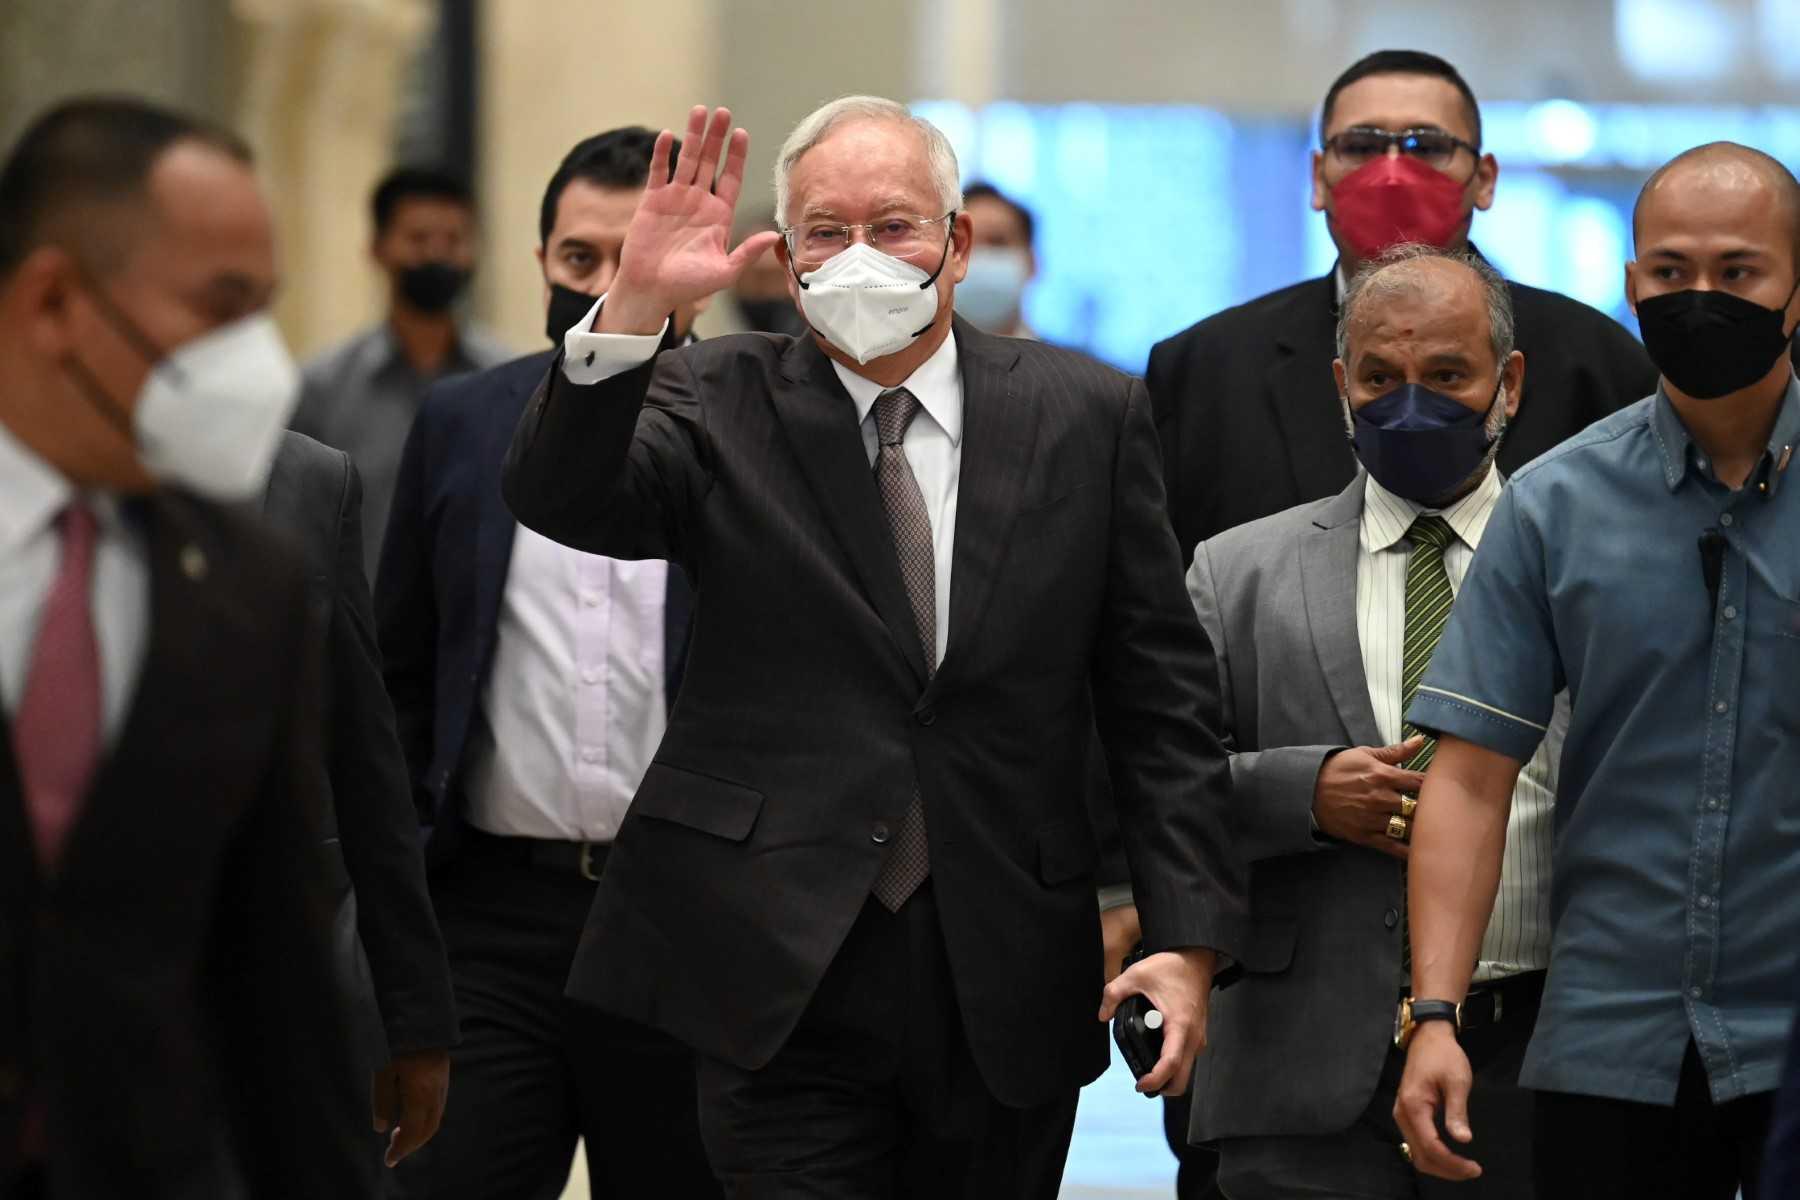 Bekas perdana menteri Najib Razak (tengah) melambaikan tangannya ketika tiba di Mahkamah Persekutuan Putrajaya hari ini. Gambar: AFP